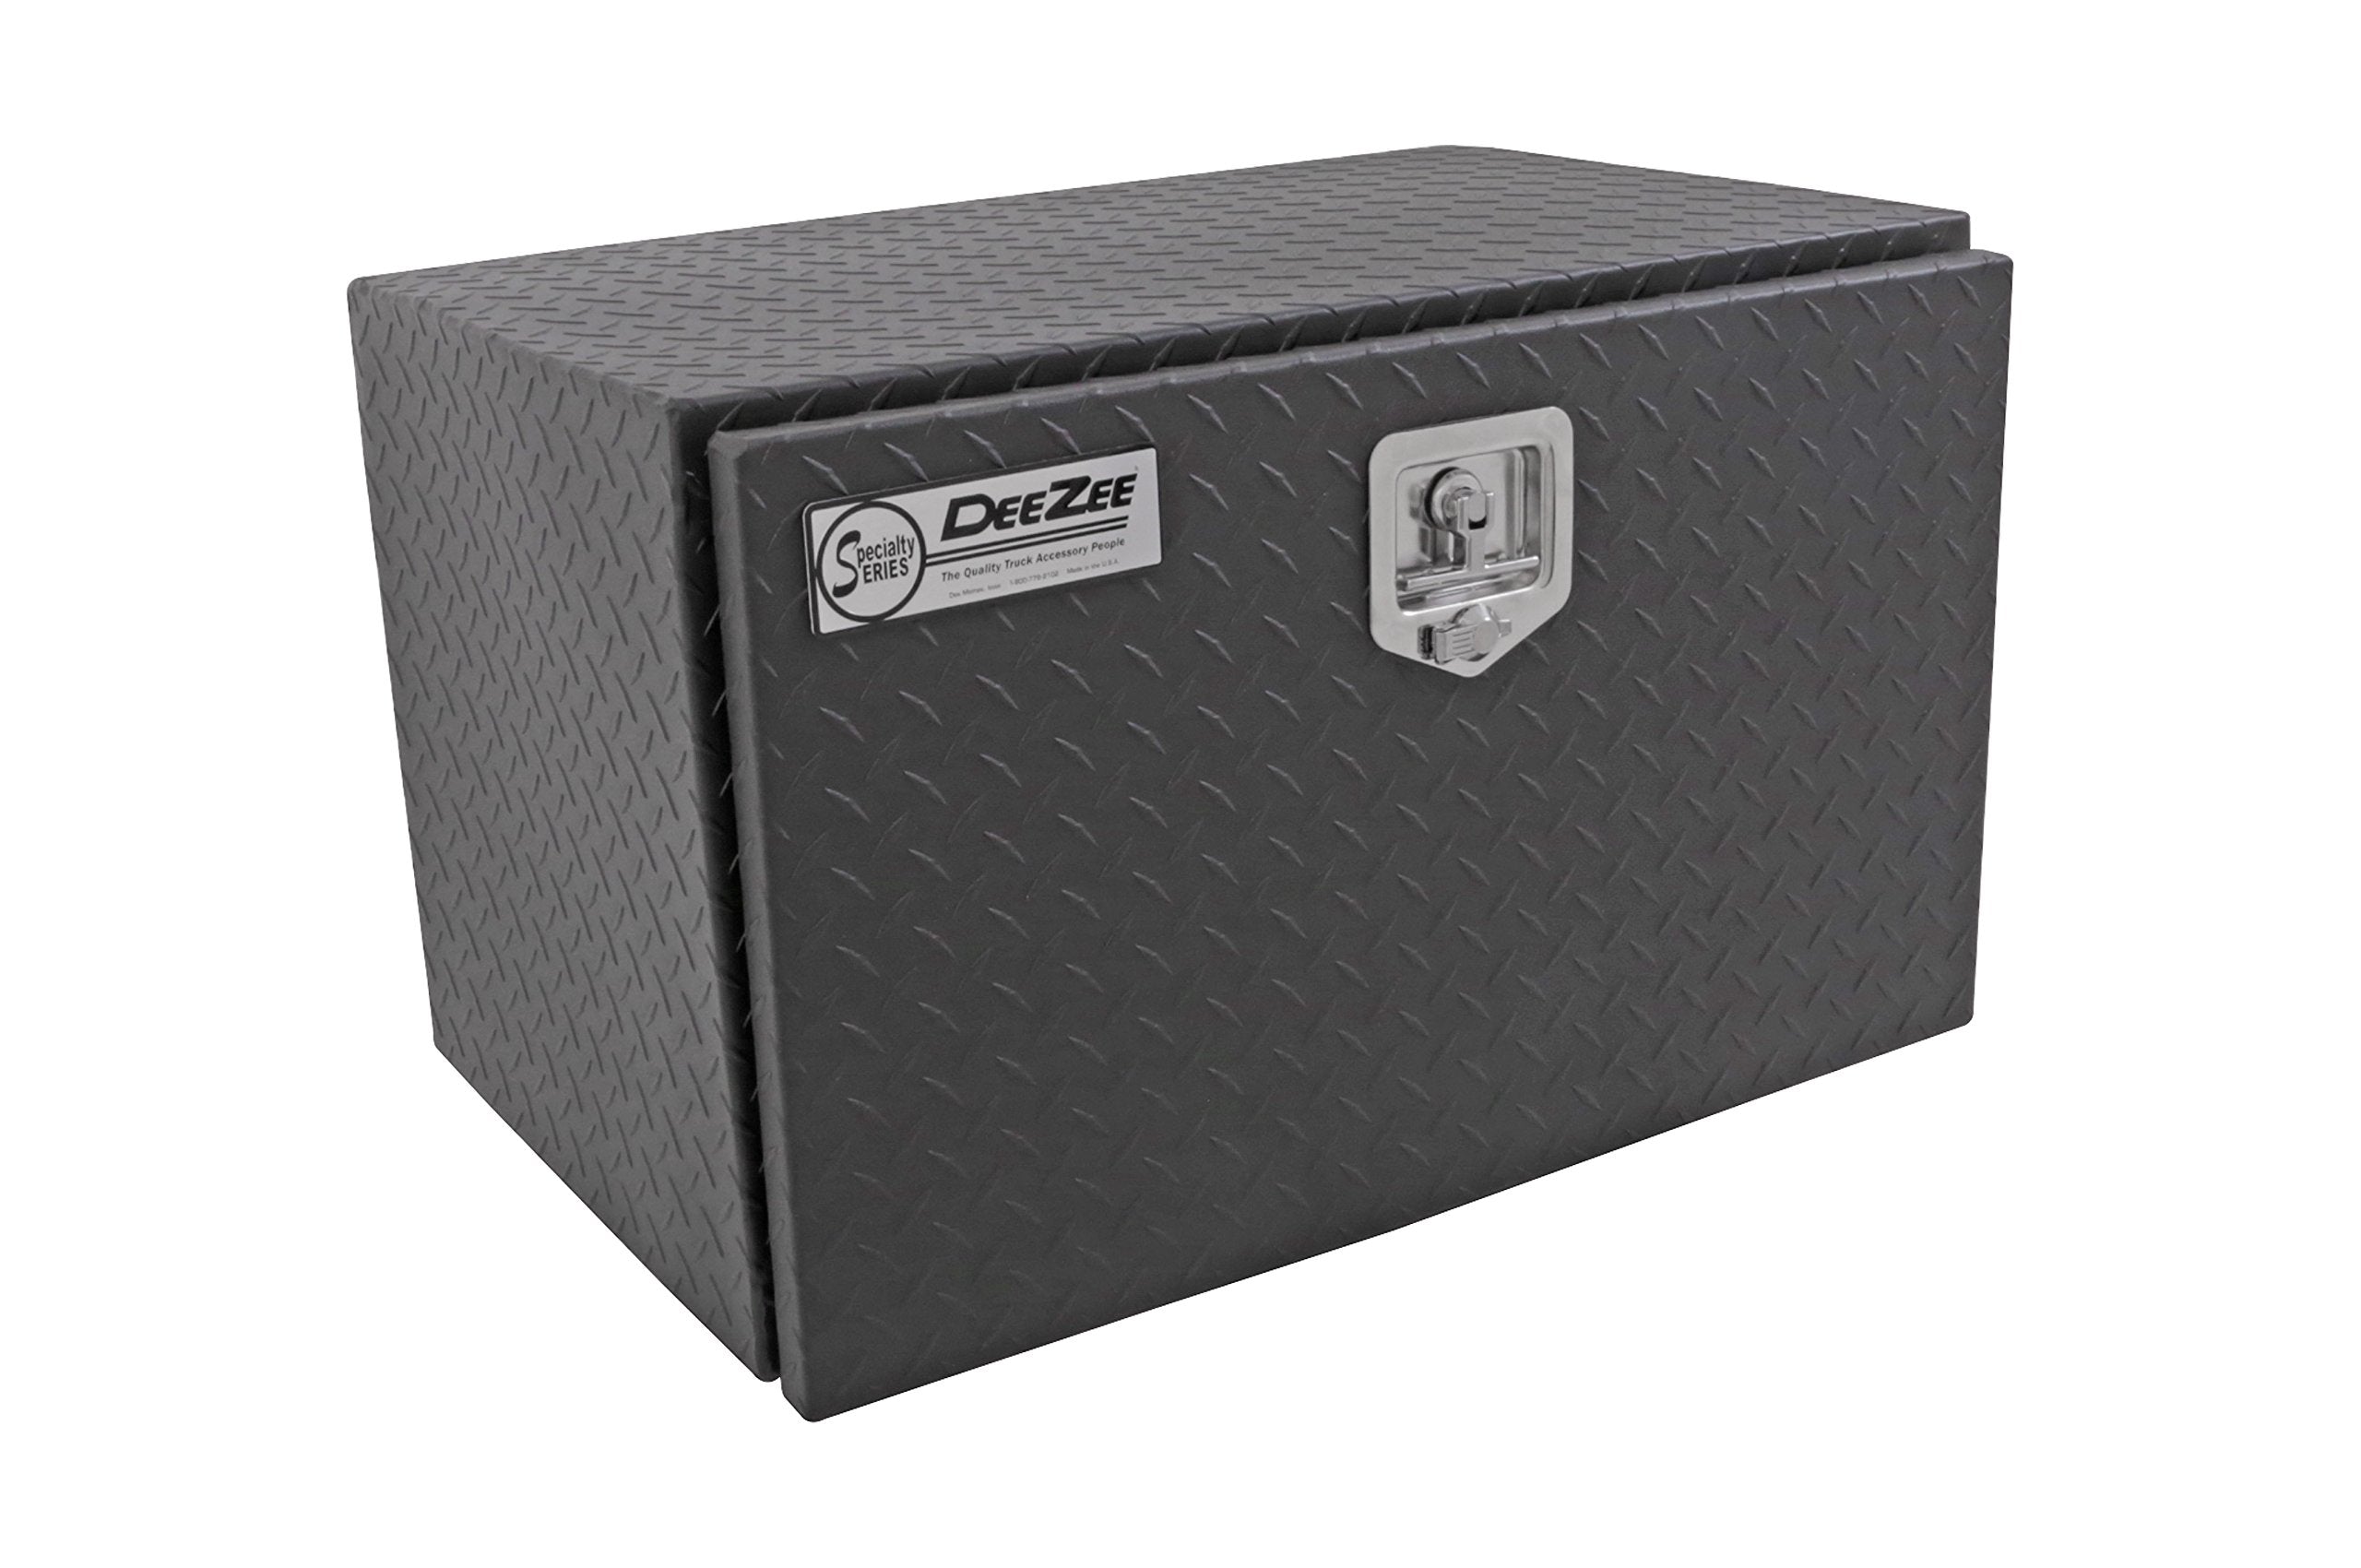 Dee Zee DZ74TB Black-Tread Aluminum Underbed Tool Box - 30"